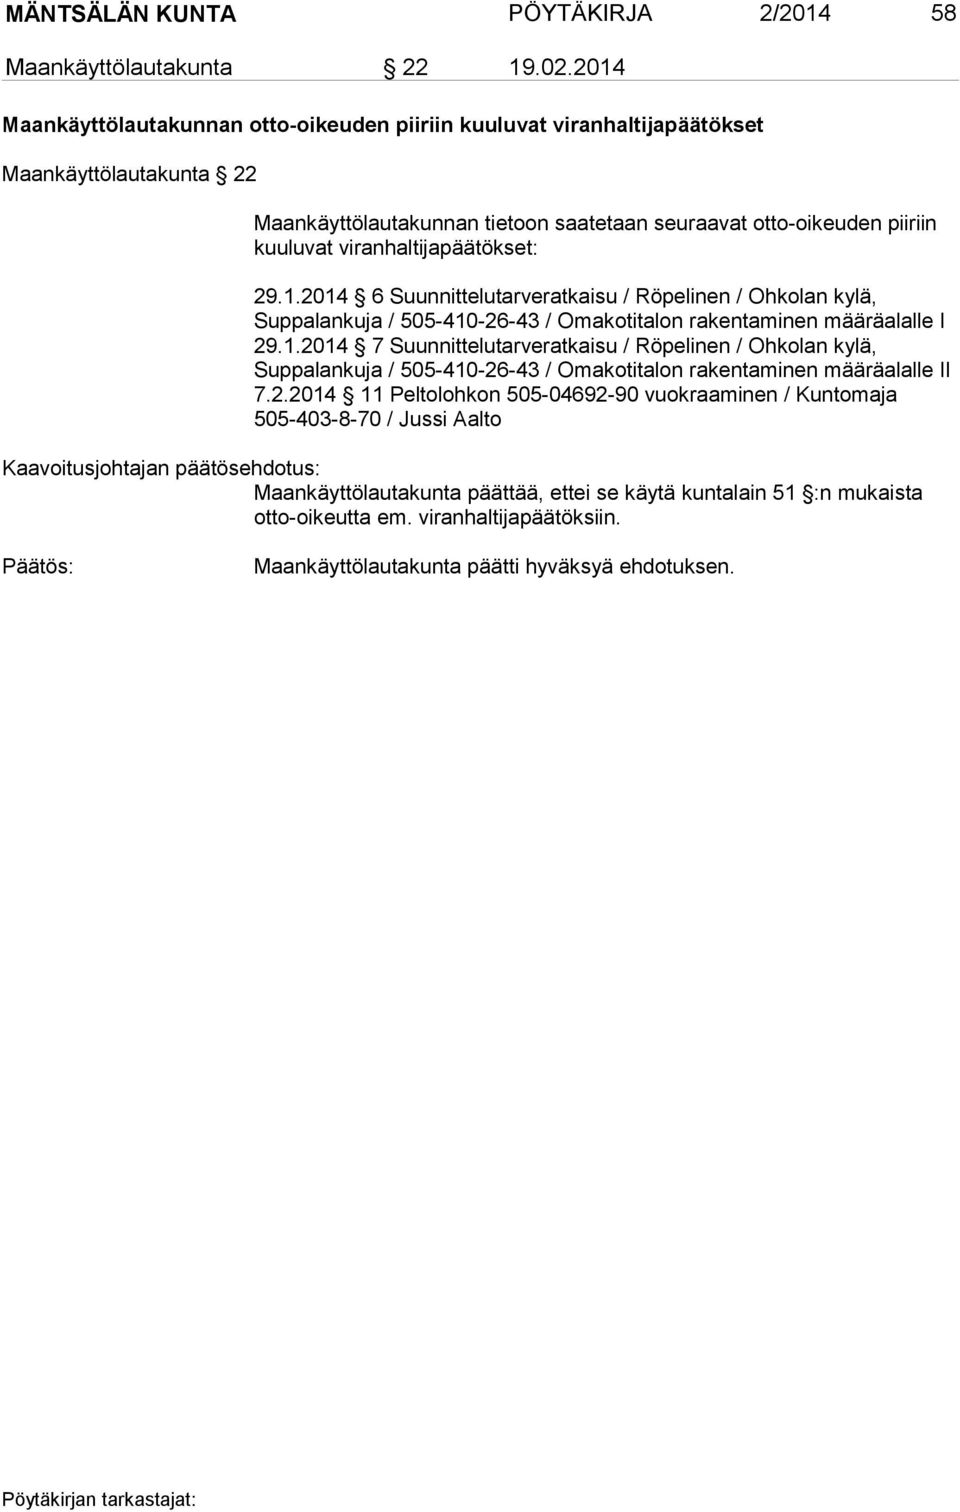 viranhaltijapäätökset: 29.1.2014 6 Suunnittelutarveratkaisu / Röpelinen / Ohkolan kylä, Suppalankuja / 505-410-26-43 / Omakotitalon rakentaminen määräalalle I 29.1.2014 7 Suunnittelutarveratkaisu / Röpelinen / Ohkolan kylä, Suppalankuja / 505-410-26-43 / Omakotitalon rakentaminen määräalalle II 7.